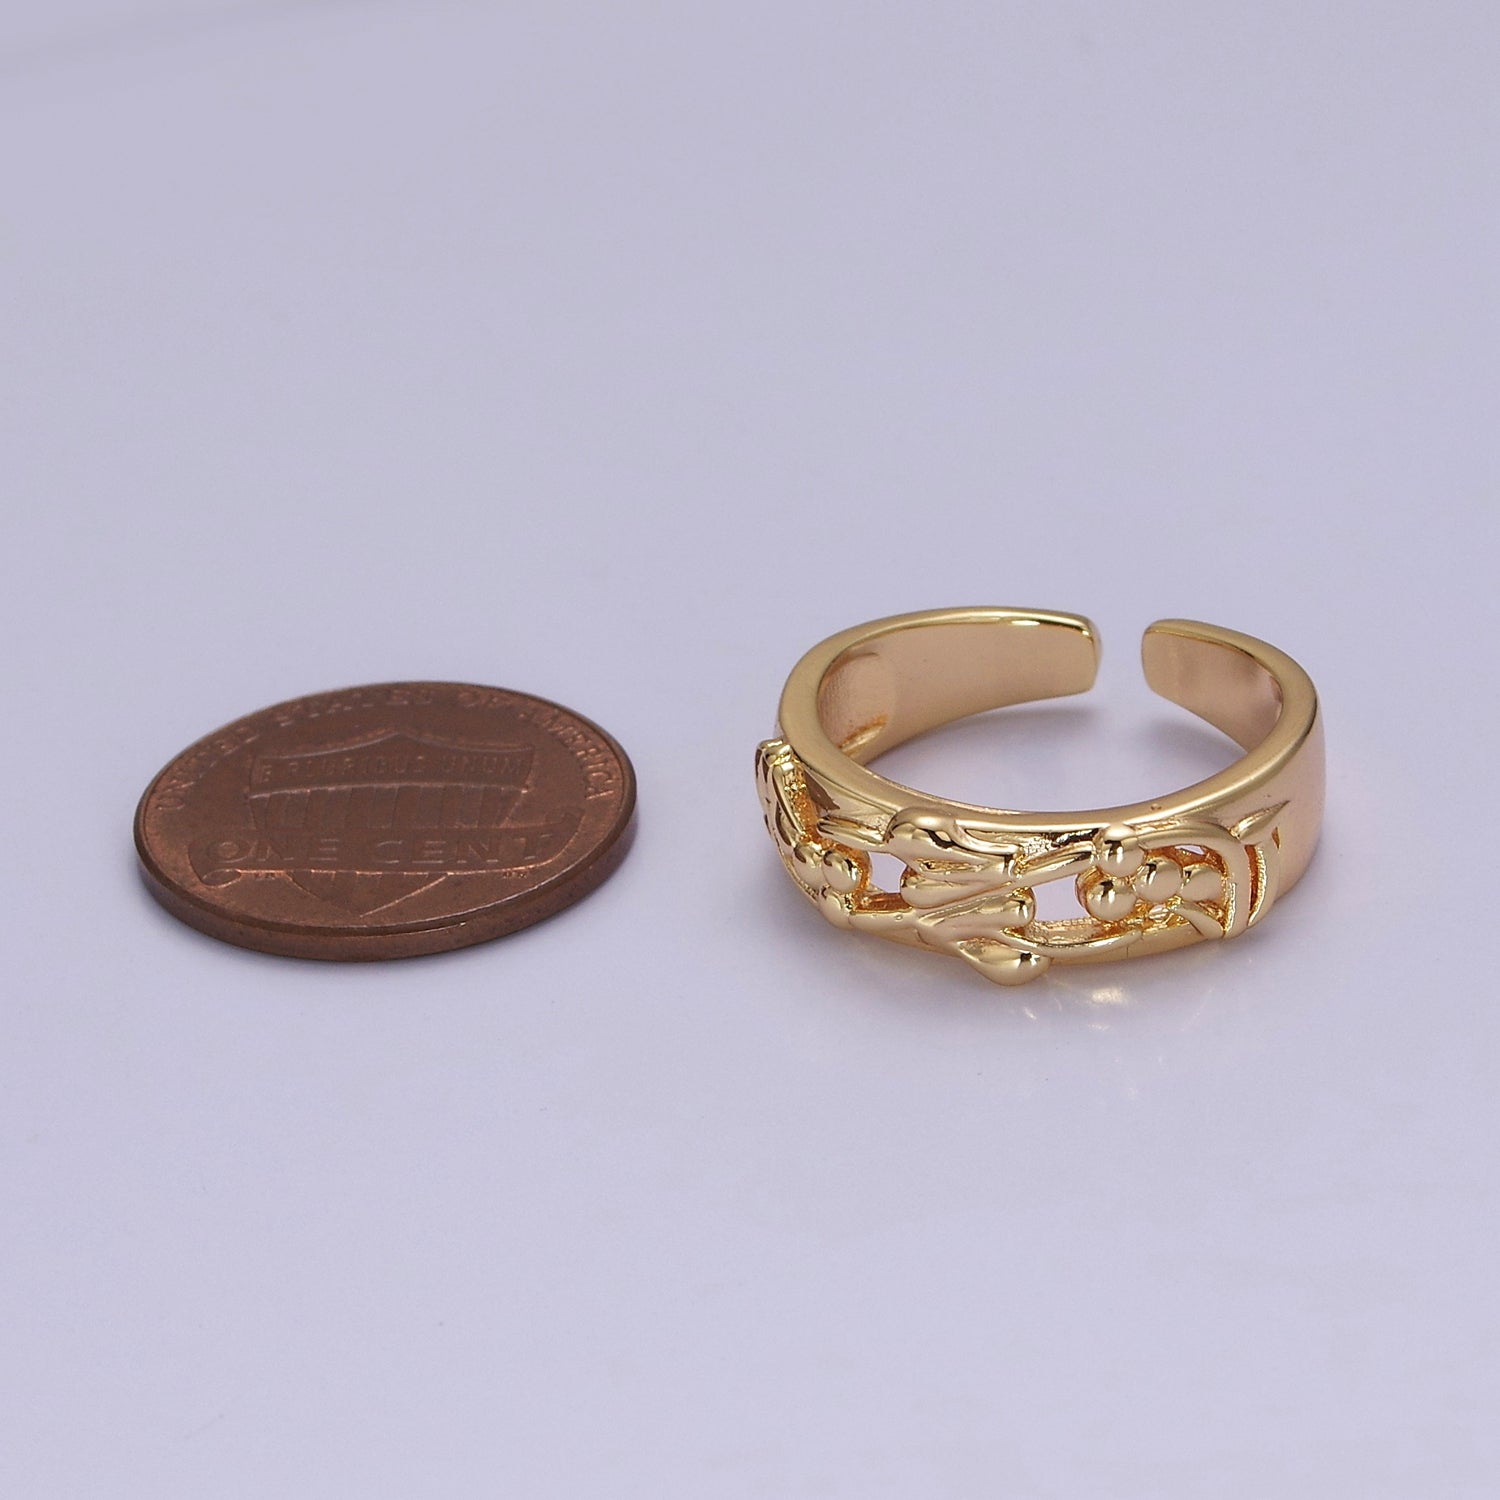 Dainty Art Deco Ring Flower Carved Design 18k Gold Filled Open Adjustable Ring V-226 - DLUXCA